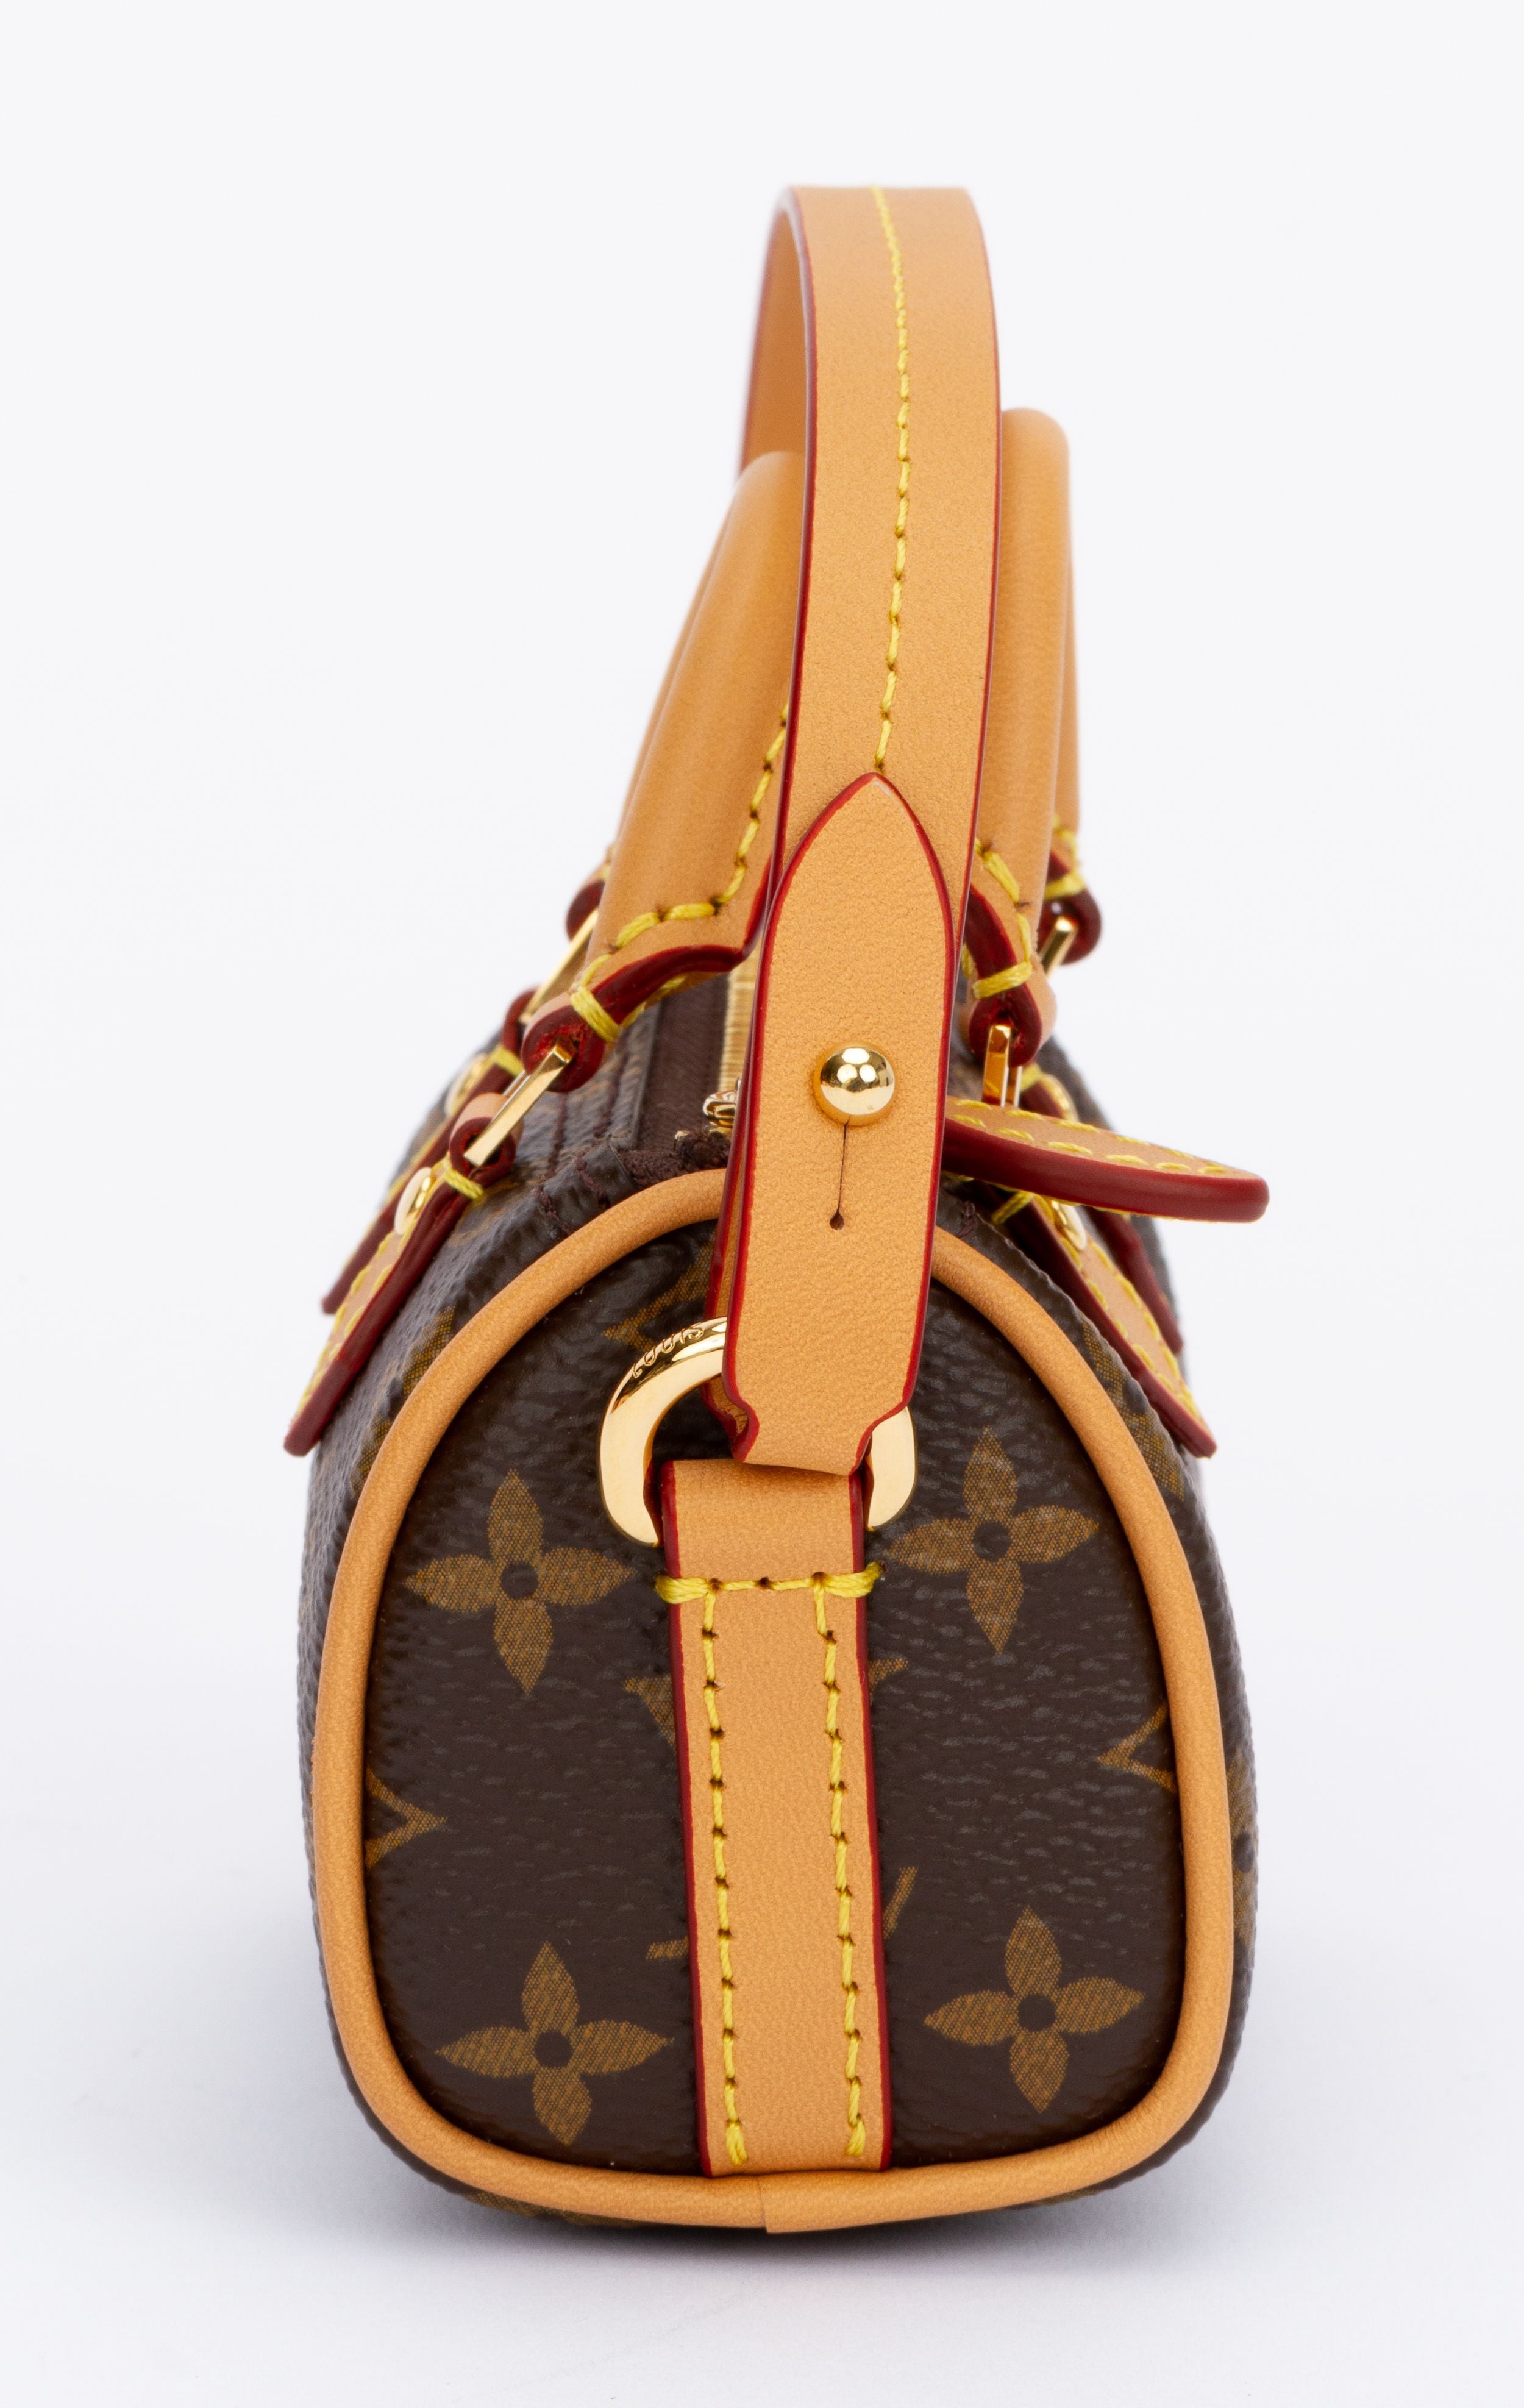 Louis Vuitton Miniature Keepall Bag